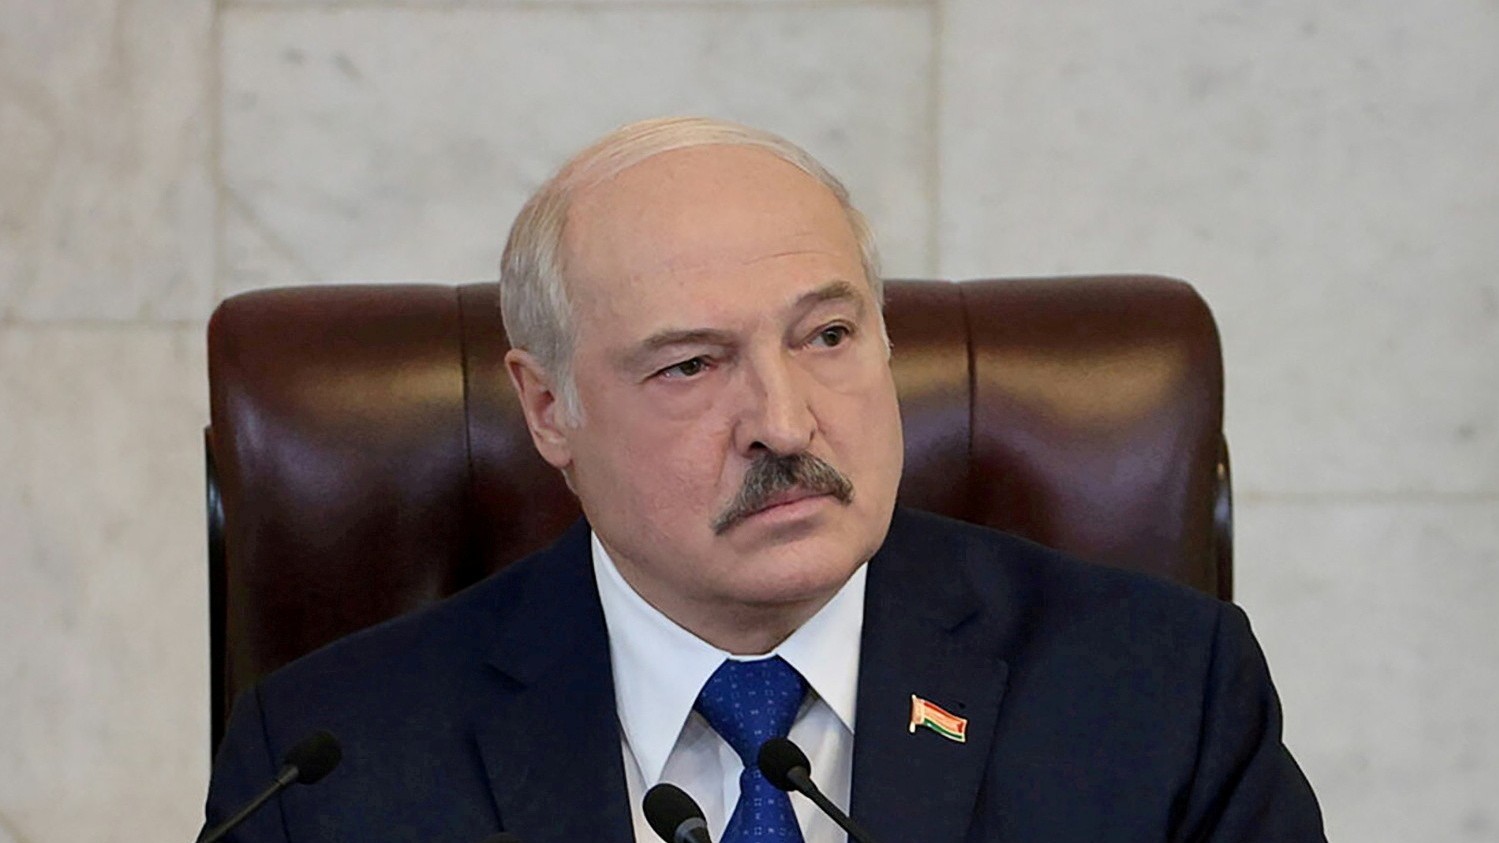 Tổng thống Belarus tố cáo Mỹ hậu thuẫn các vụ khiêu khích, chỉ đích danh loạt nước châu Âu giúp sức